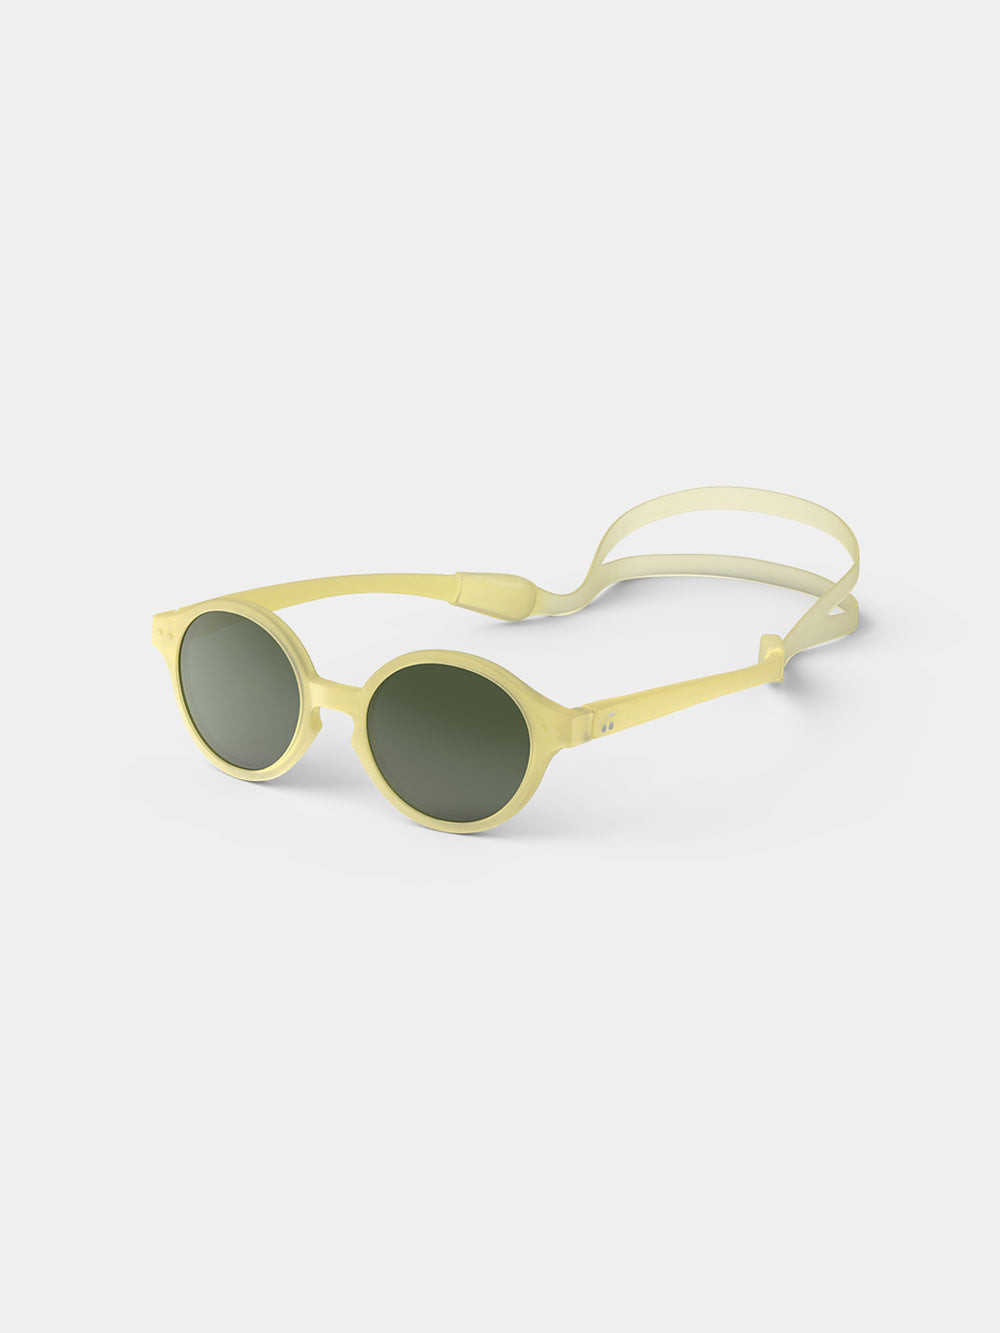 Bonpoint x Izipizi baby sunglasses light yellow